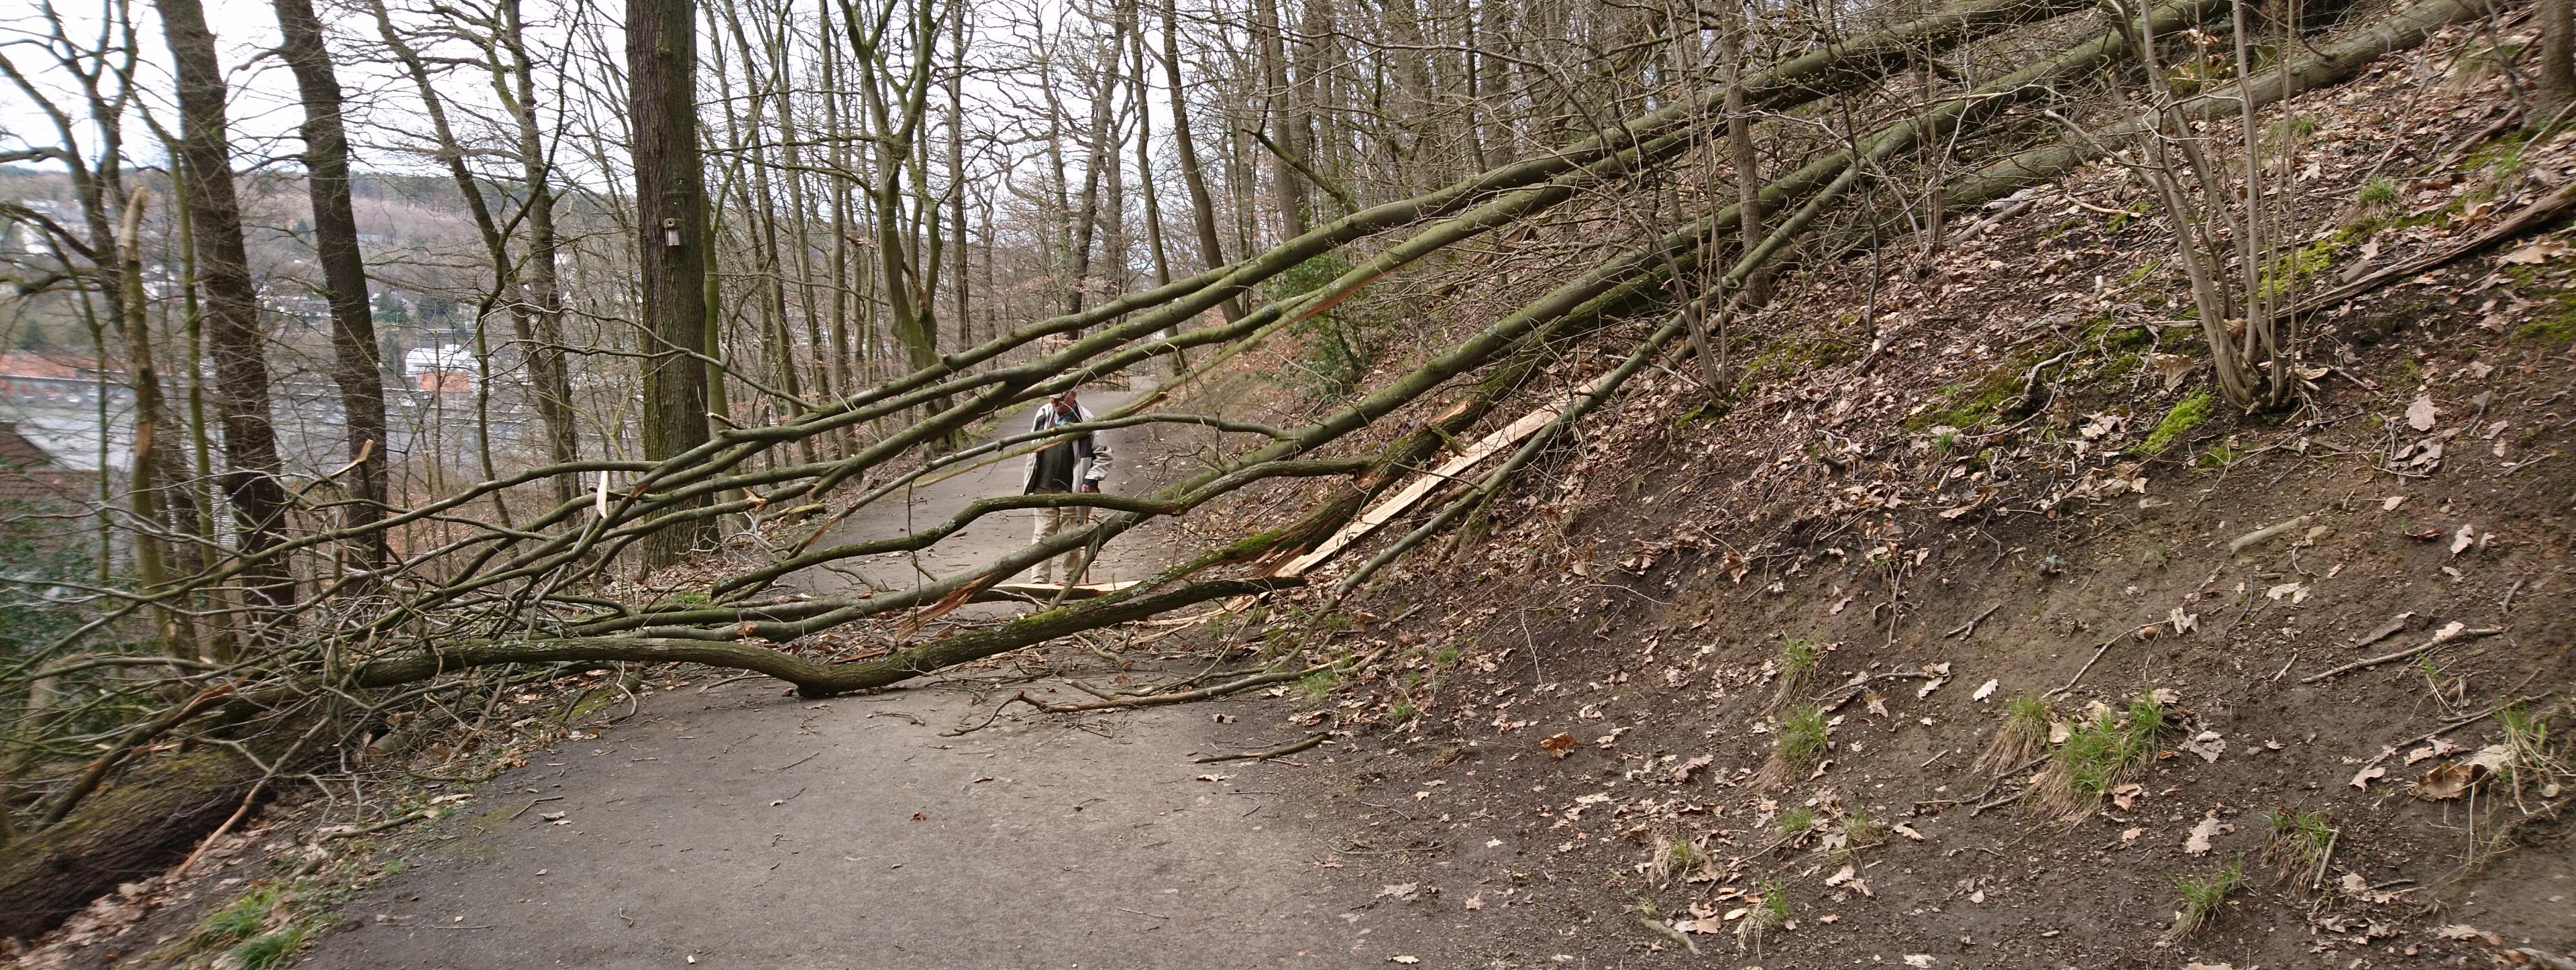 Mitten auf dem Weg zum Kapellenberg liegt ein umgestürzter Baum. Dahinter steht ein Spaziergänger. Gemessen mit seiner Körpergröße ist zu erkennen, wie groß der Baum ist.